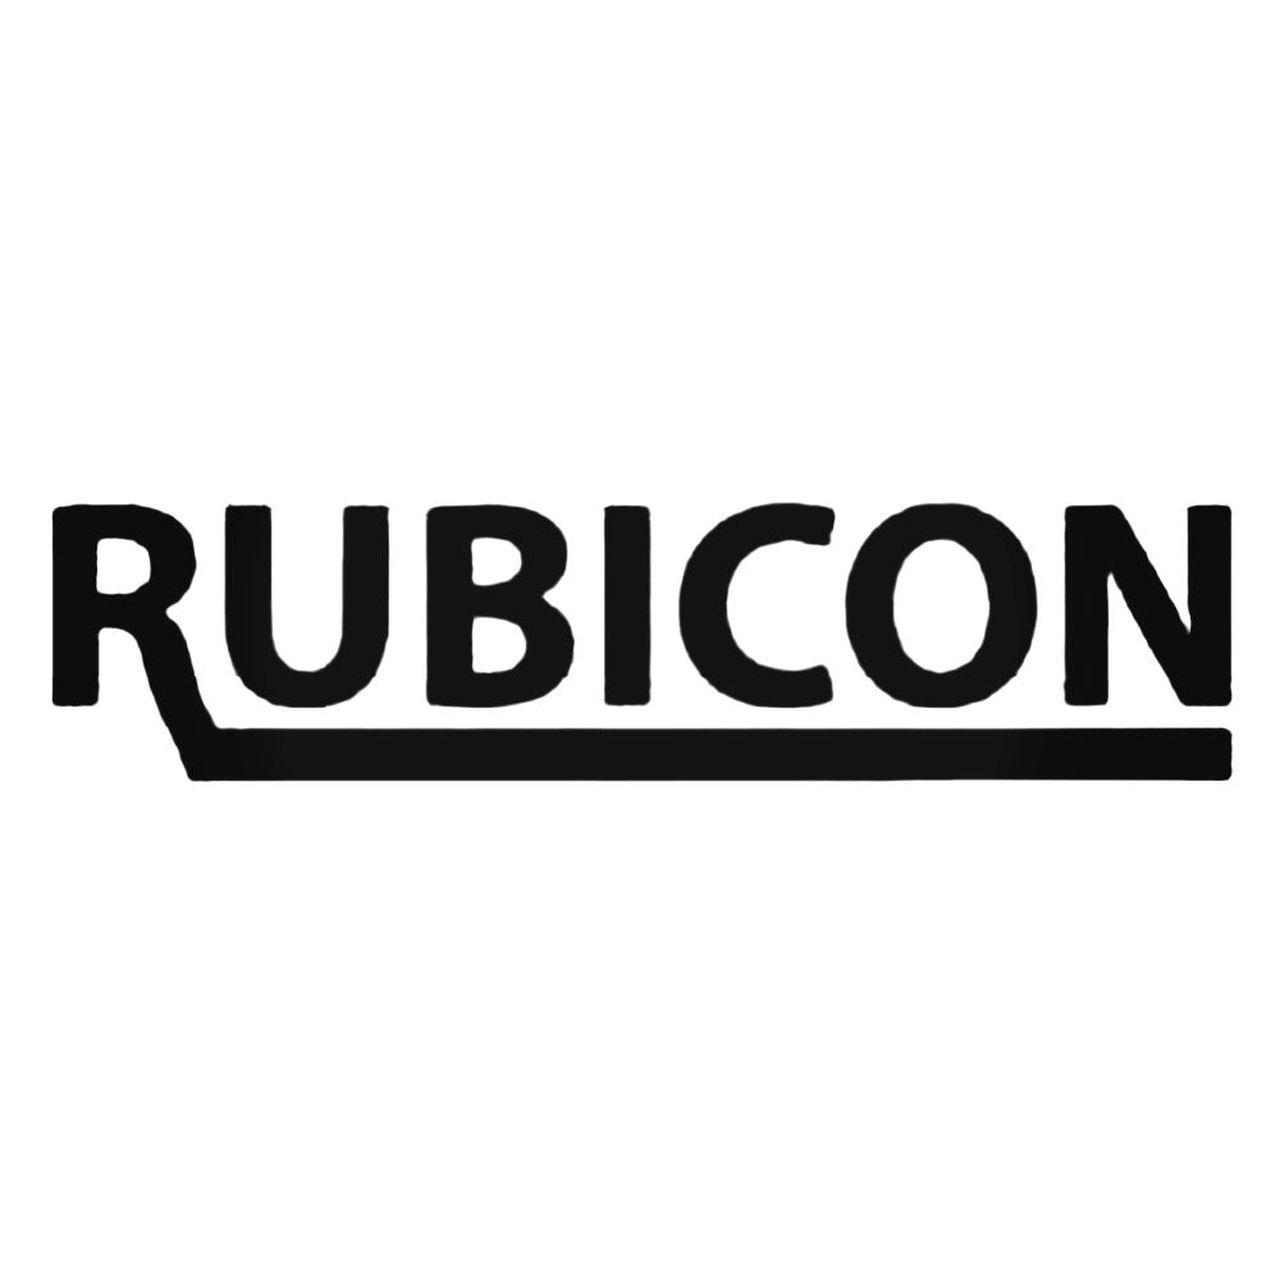 Rubicon Logo - Rubicon Usa Band Decal Sticker